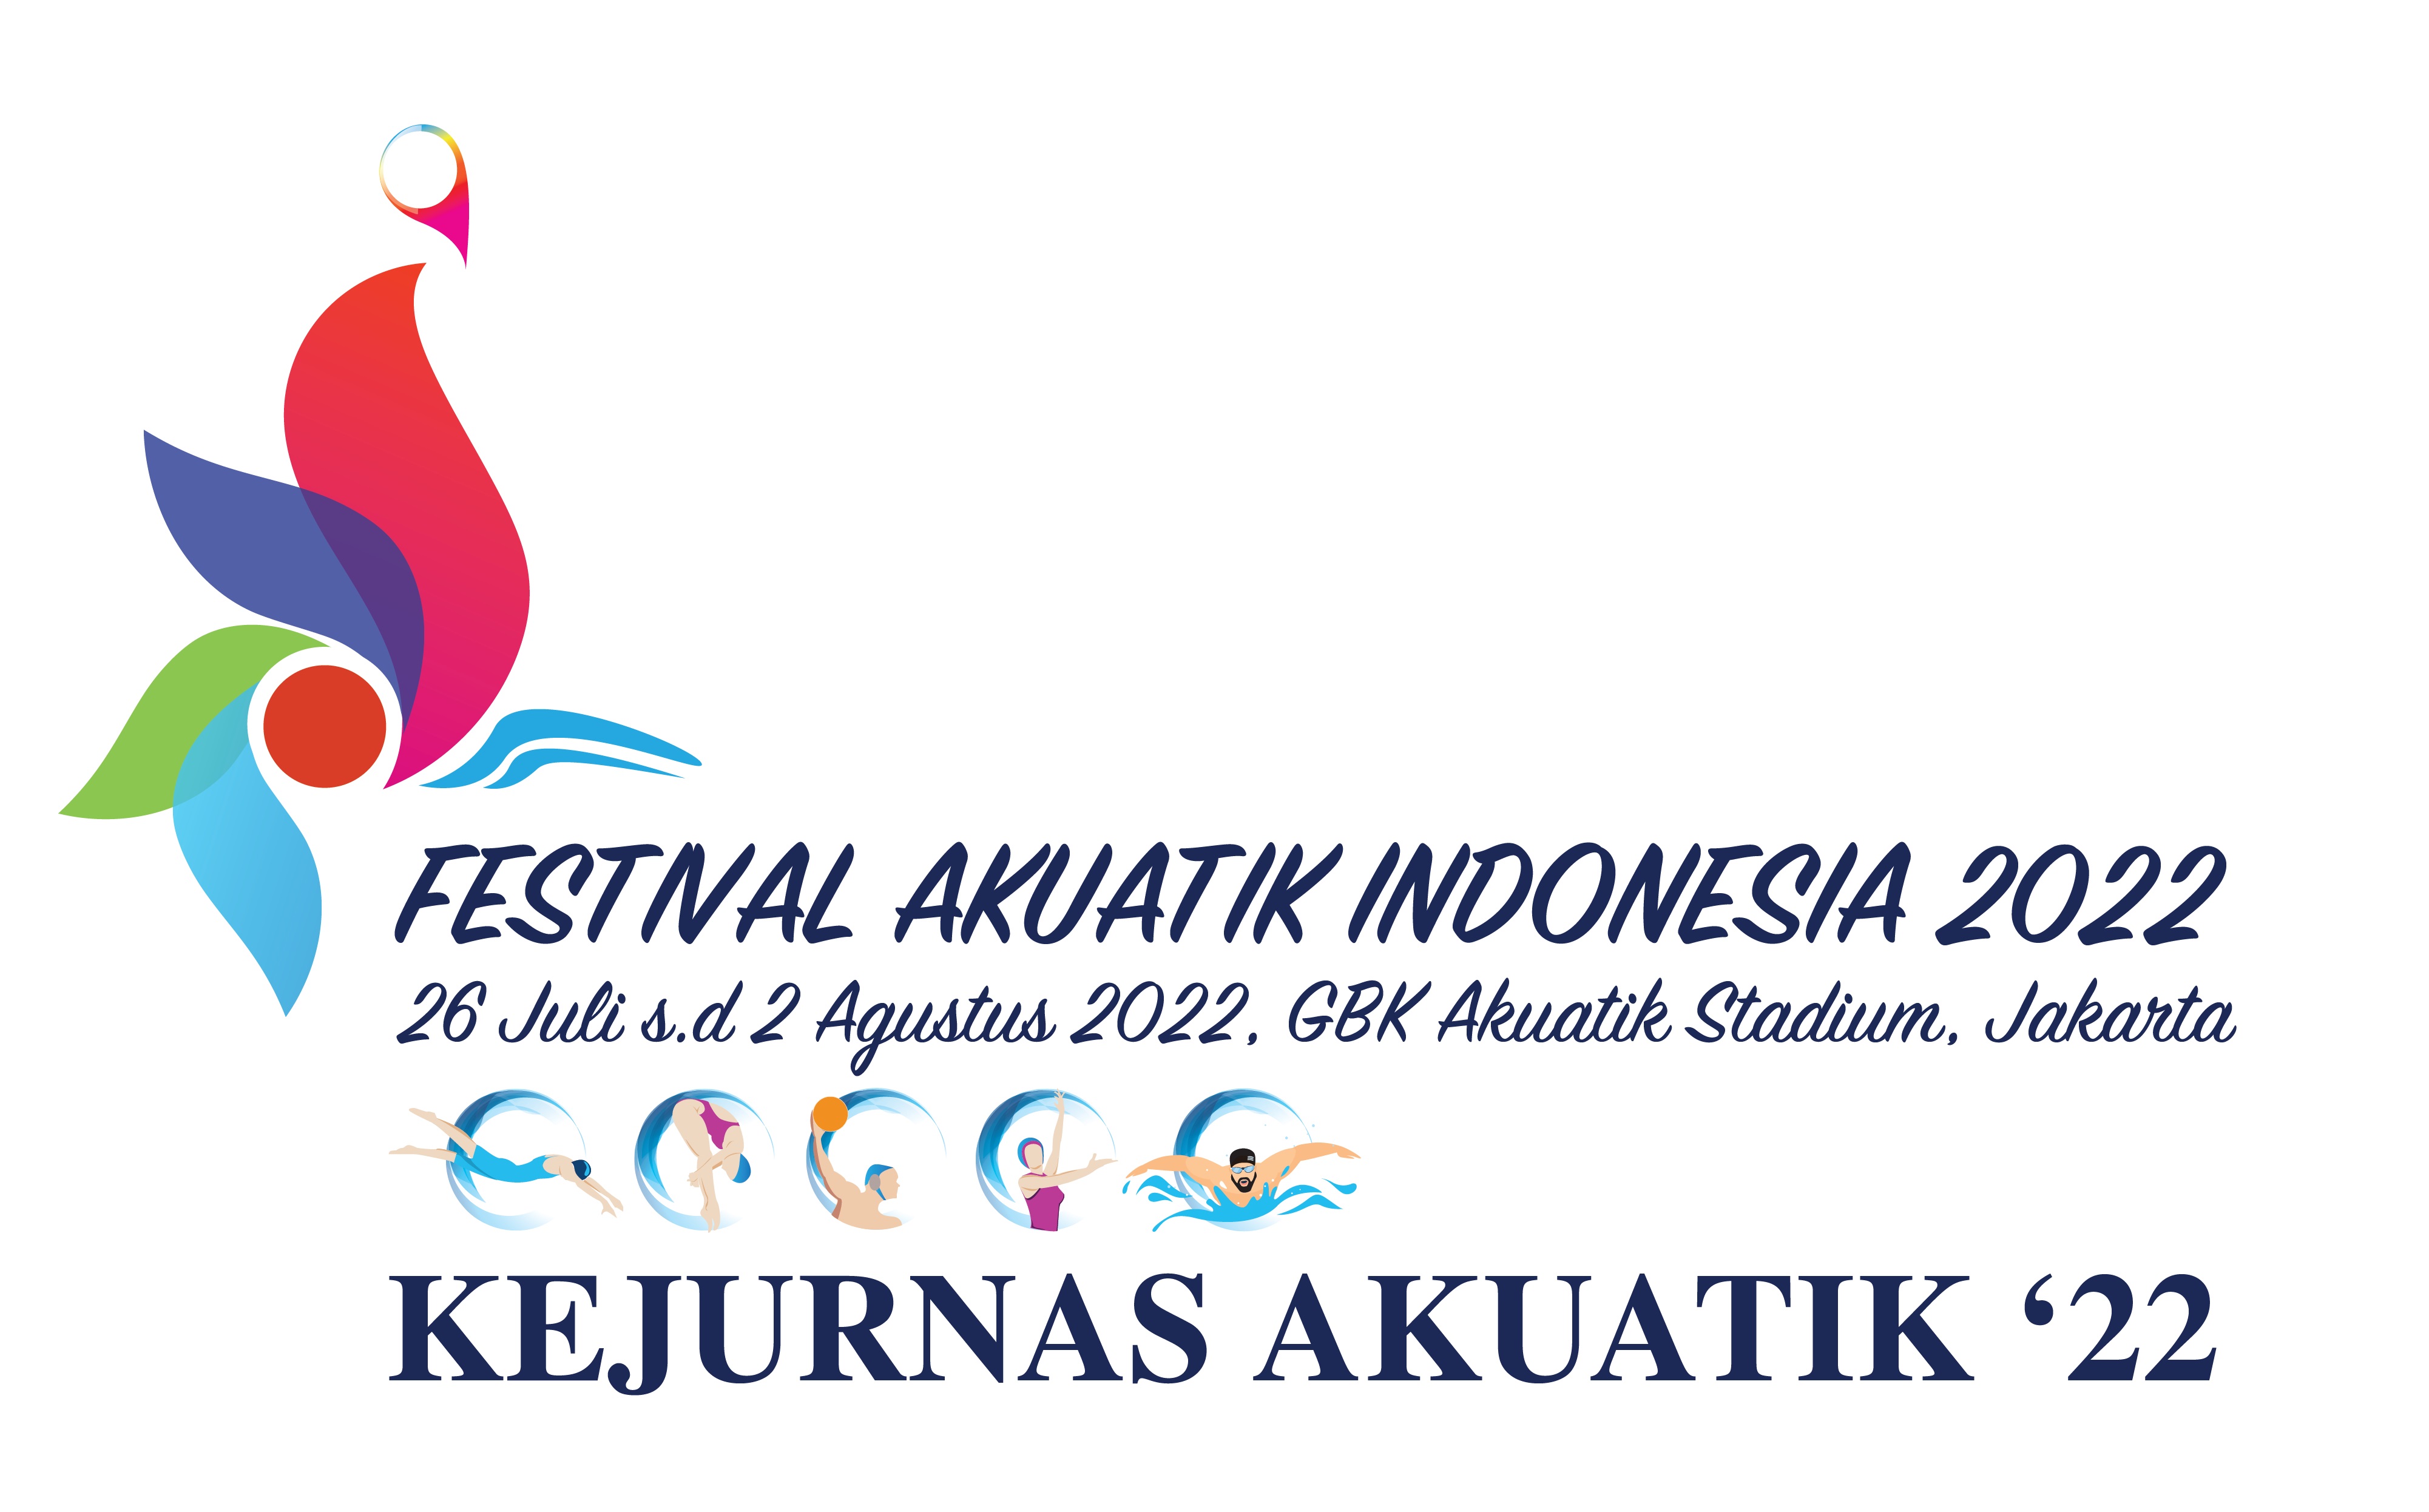 Festival Akuatik Indonesia 2022 Siap Digelar di Jakarta Mulai Besok